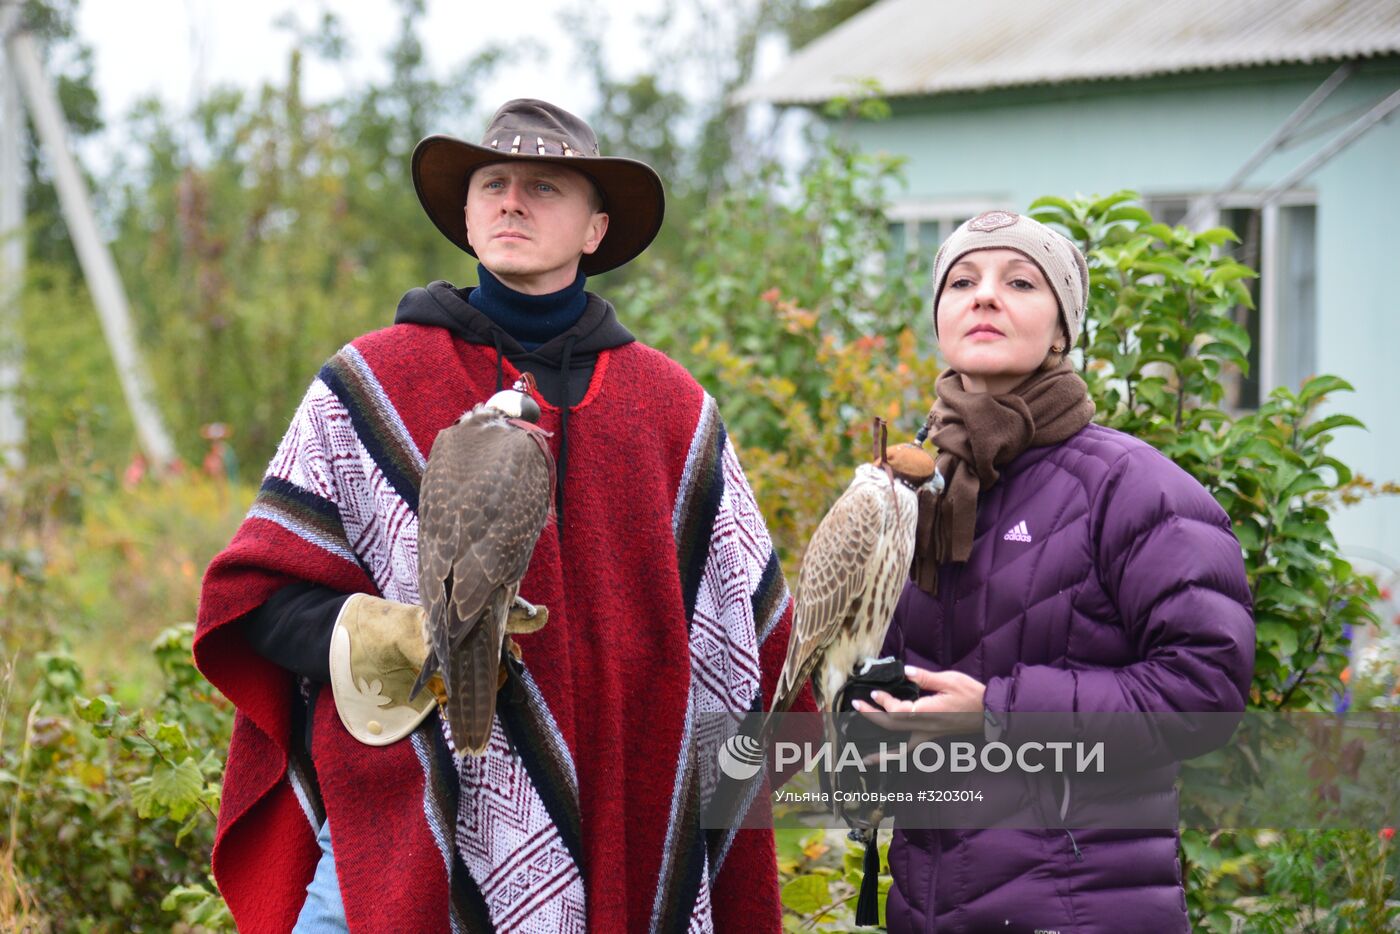 Всероссийские соревнования охотников с ловчими птицами "Слёт сокольников – 2017"